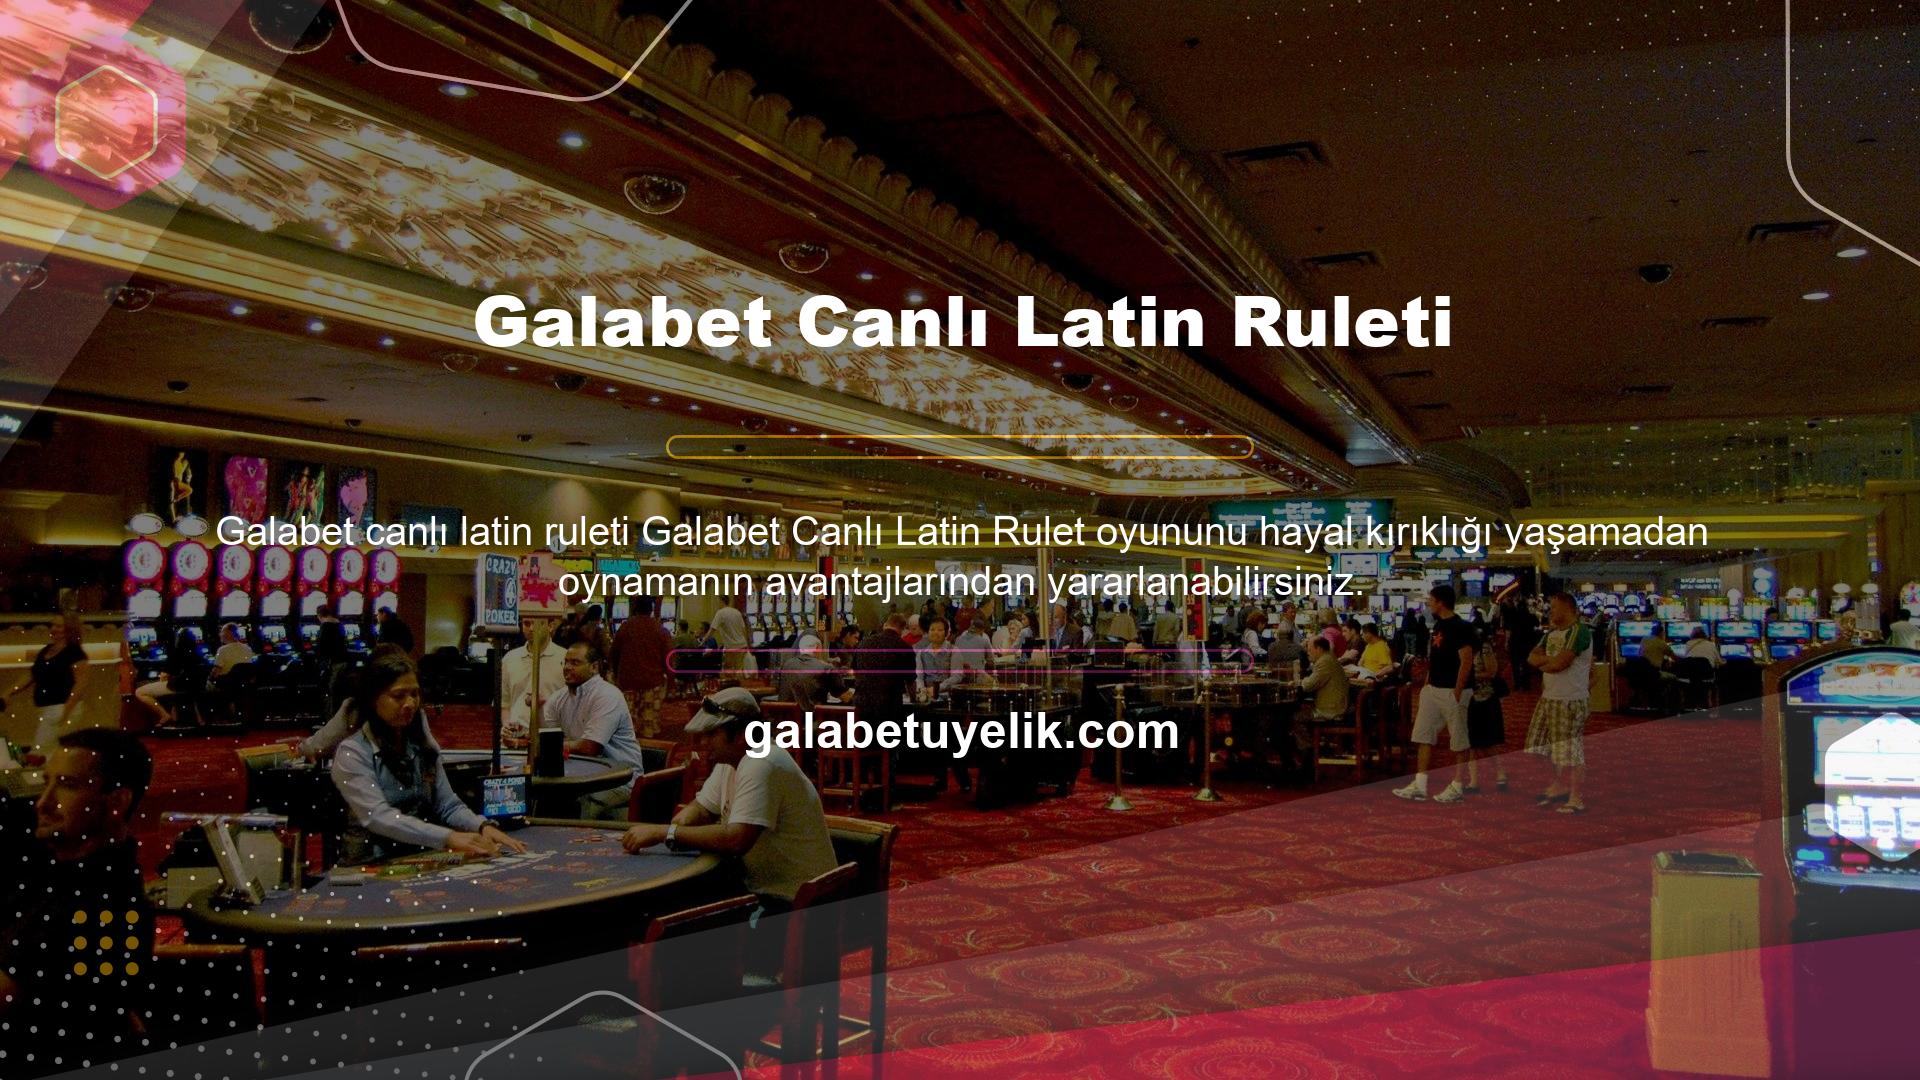 Galabet casino oyunları teknik hatalardan dolayı sizi olumsuz etkilemeyecektir